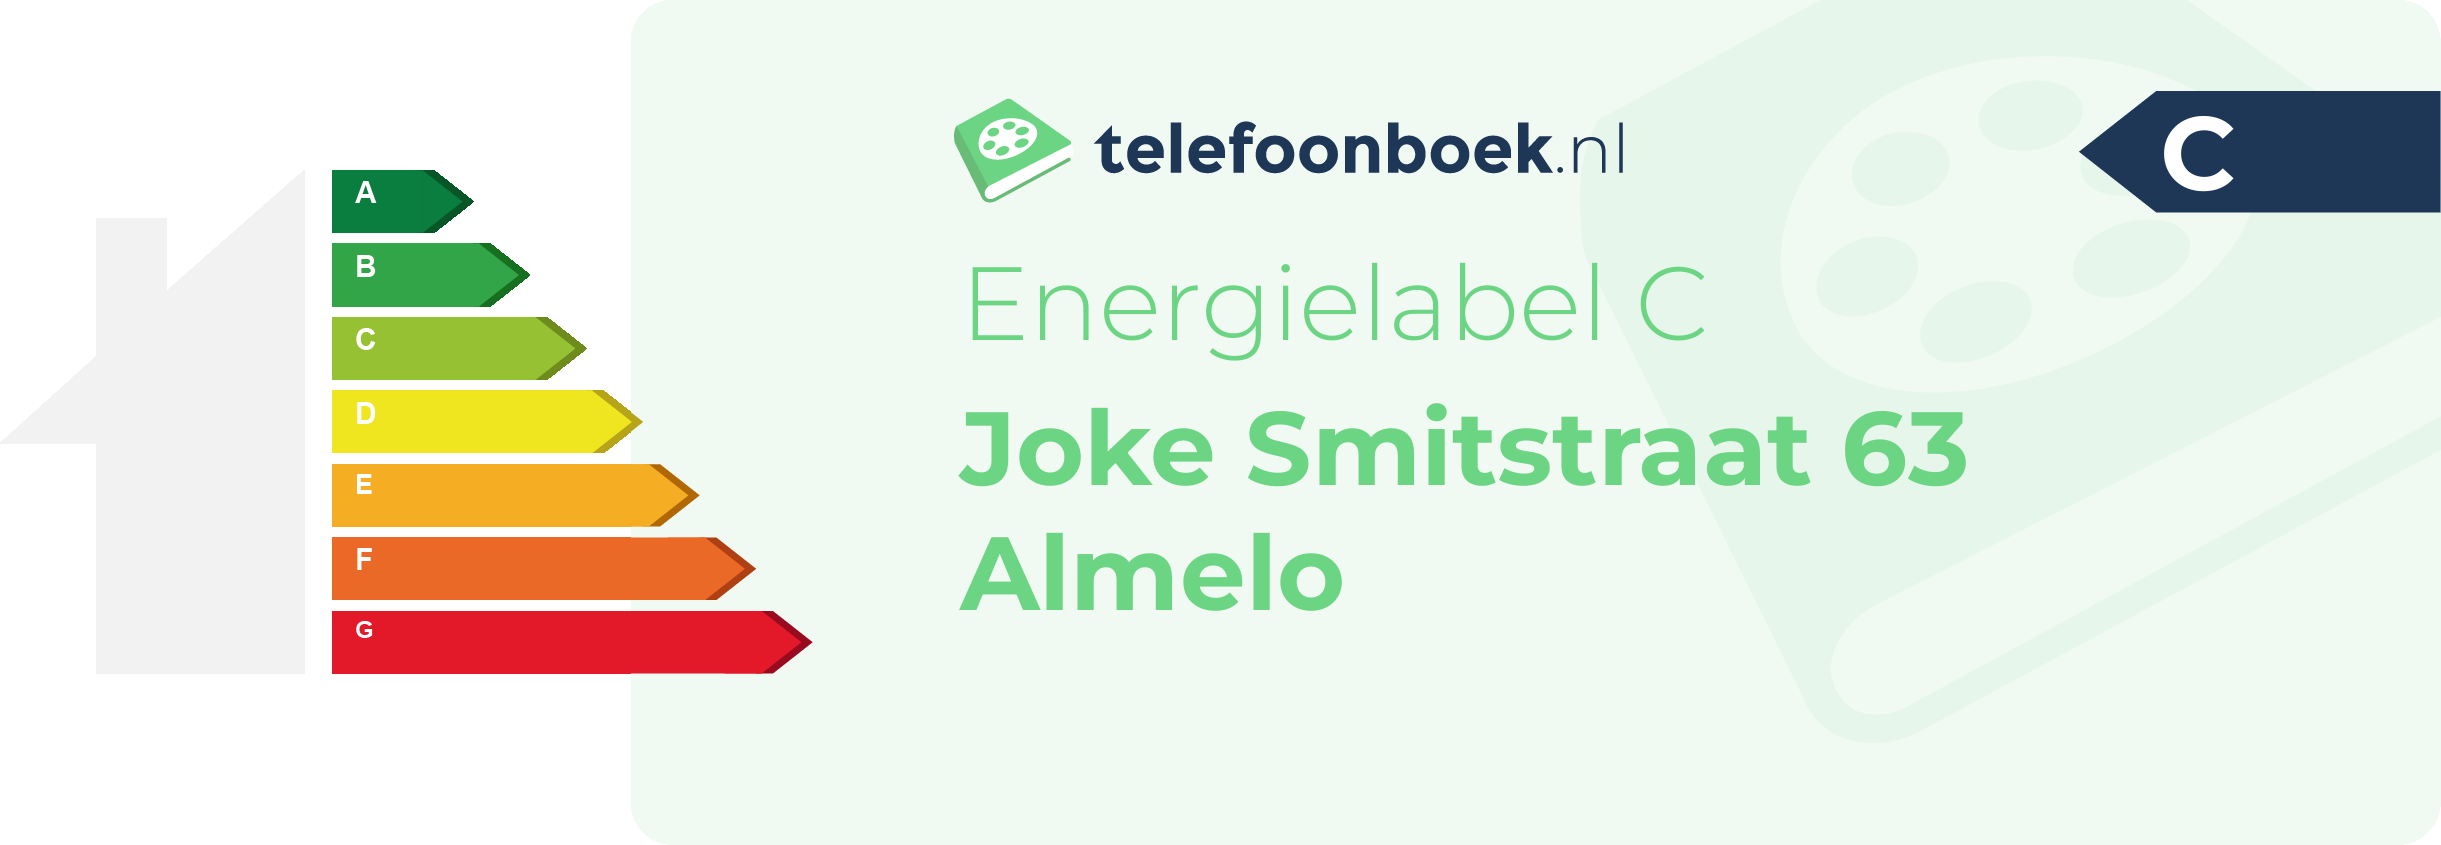 Energielabel Joke Smitstraat 63 Almelo